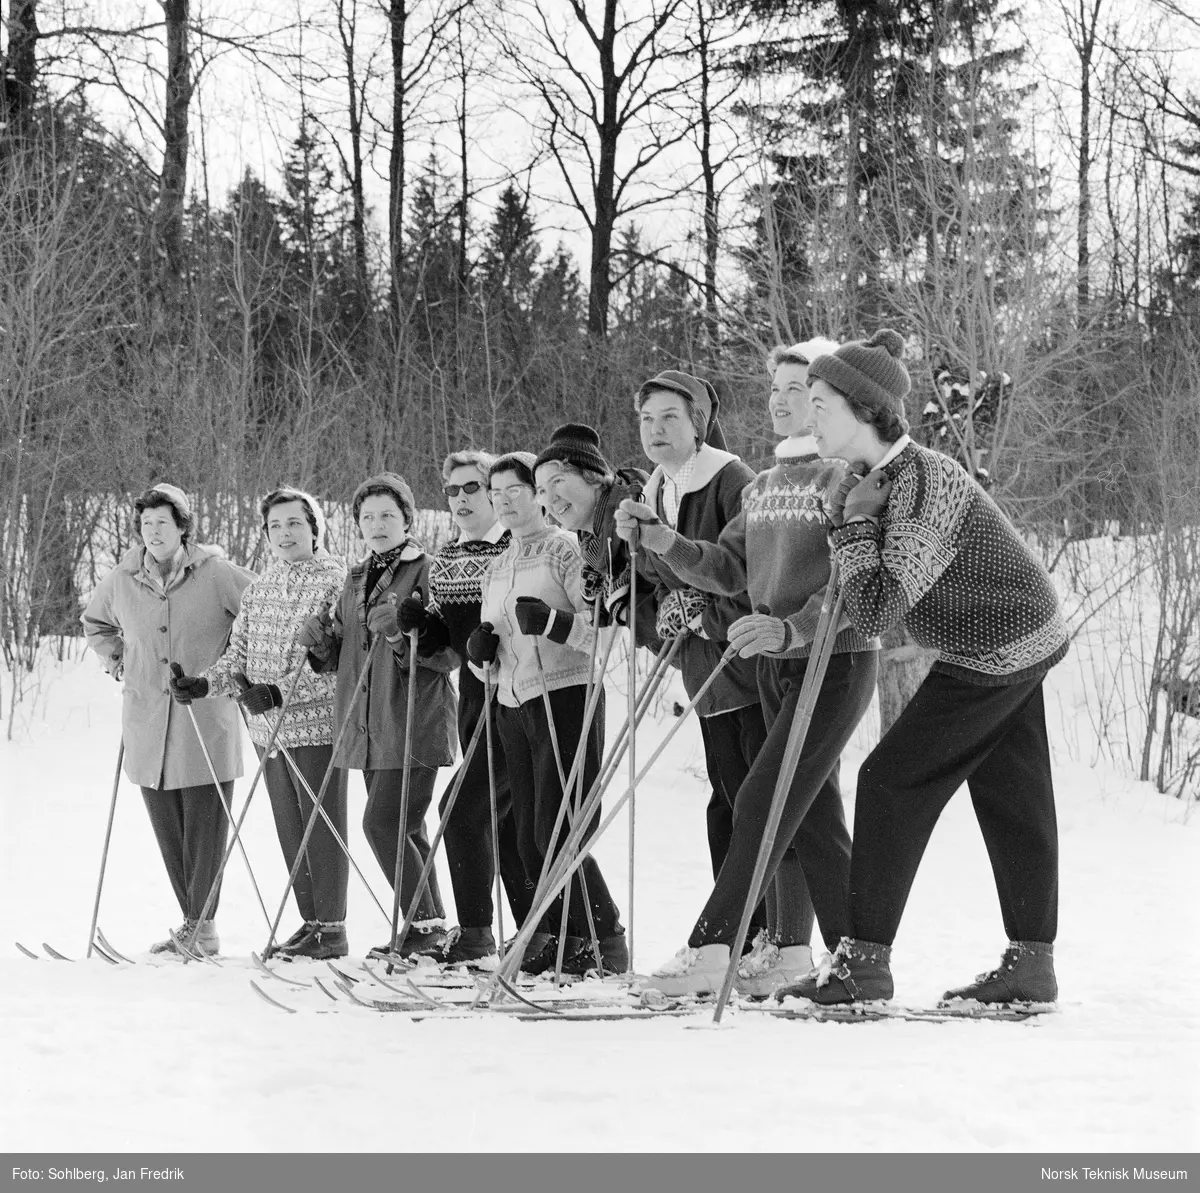 Skikurs for husmødre vinteren 1963. Fra en serie til en artikkel i Norsk Dameblad nr. 14, 1963, kalt "Trysil-Ola og tretten husmødre". v/ AKS.